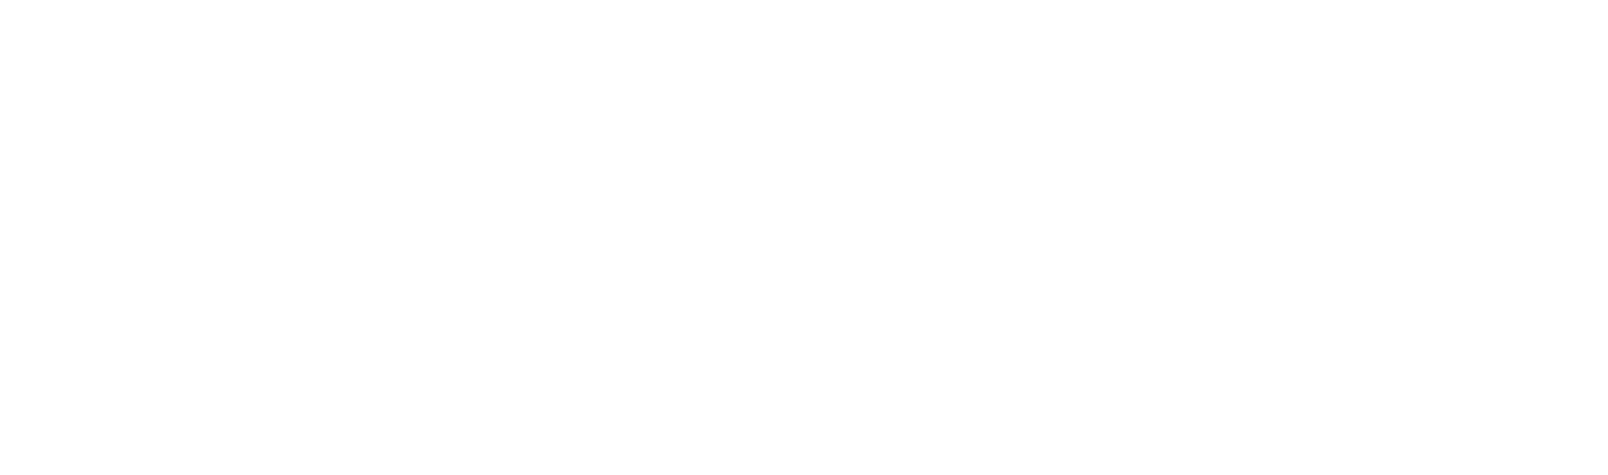 Uni_logo